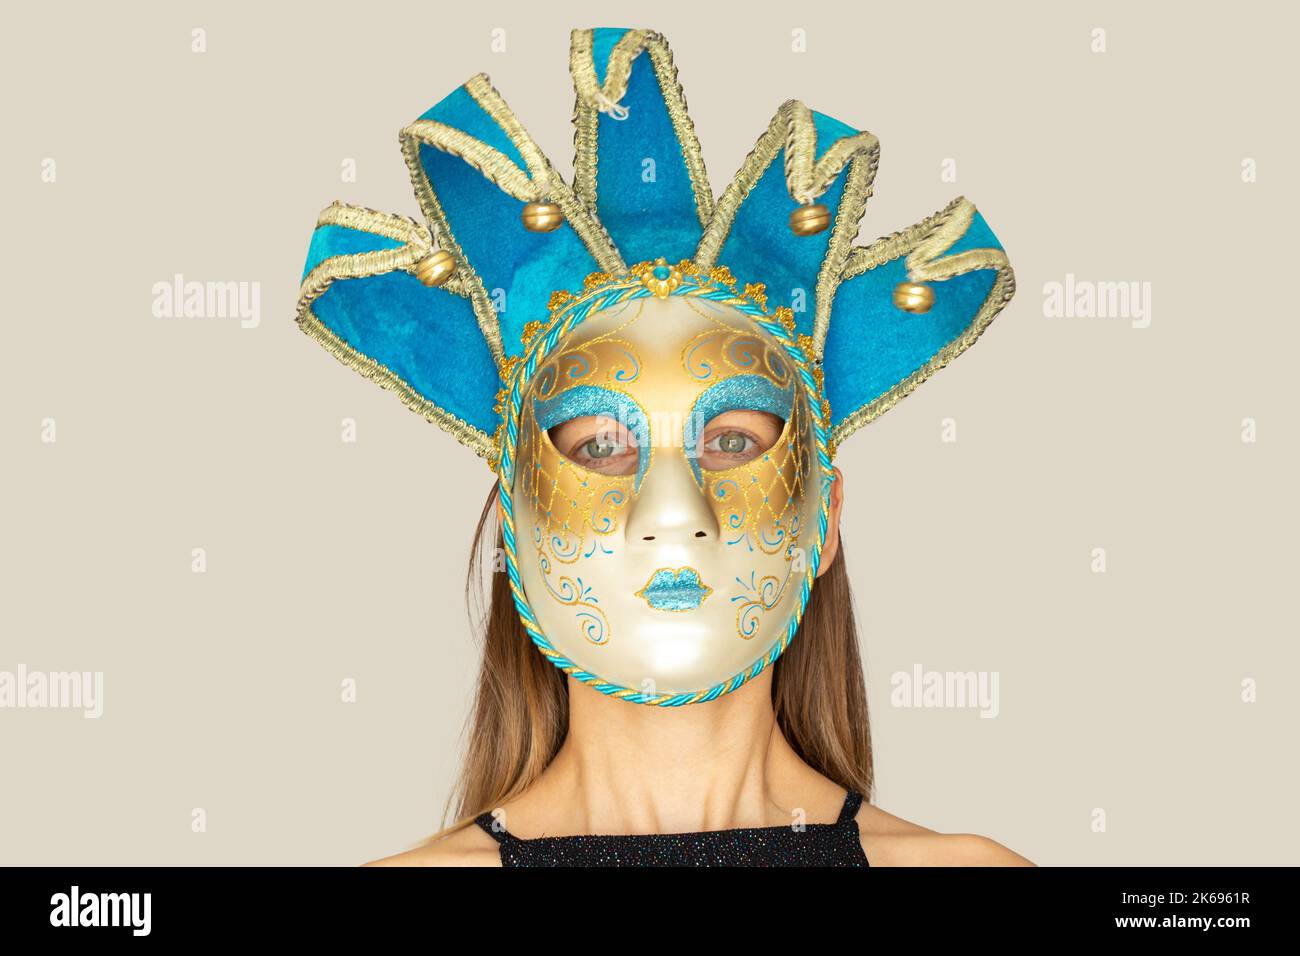 Il volto di una ragazza in una maschera di carnevale veneziana su uno sfondo isolato, mascherata e attore mascherato, teatro Foto Stock